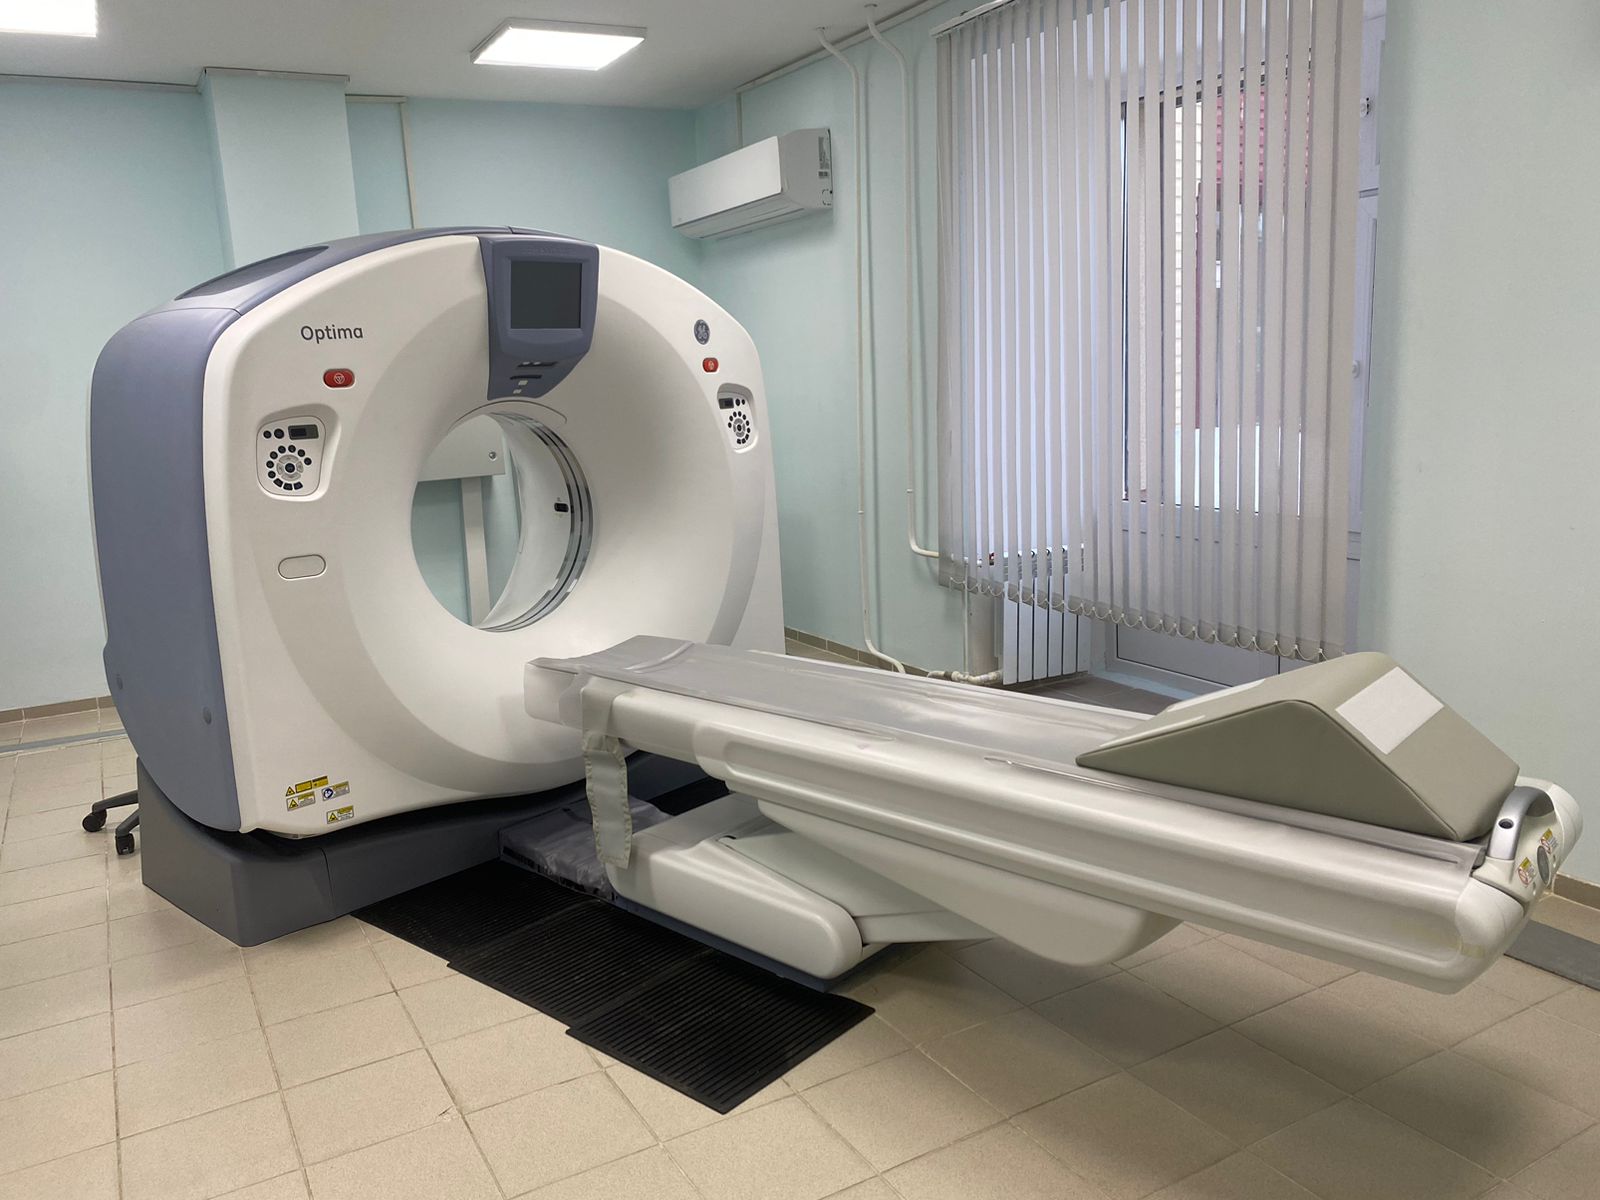 В Октябрьской районной больнице появился новый компьютерный томограф